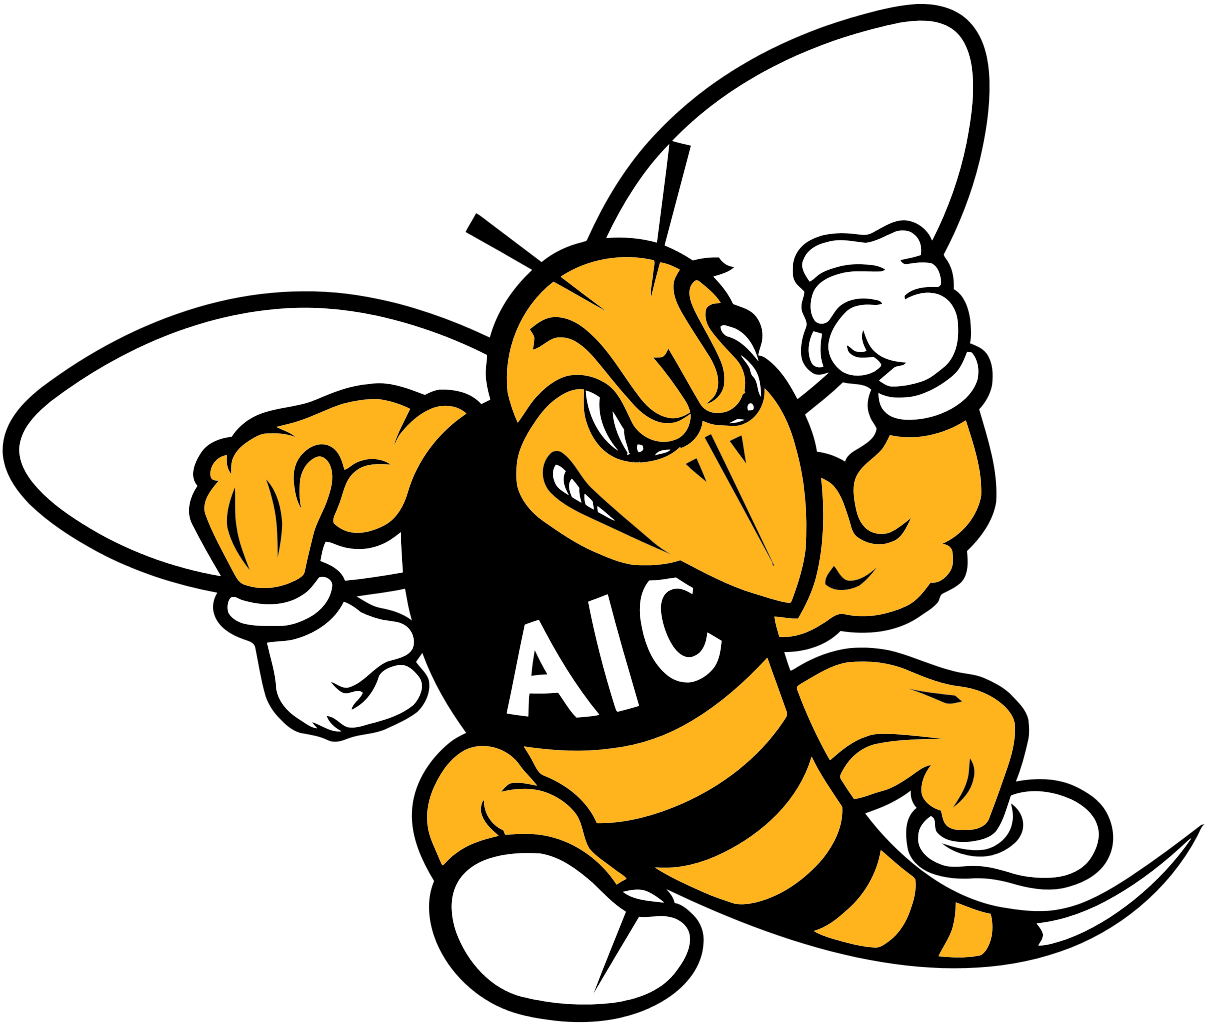 Aic Yellow Jackets Logo